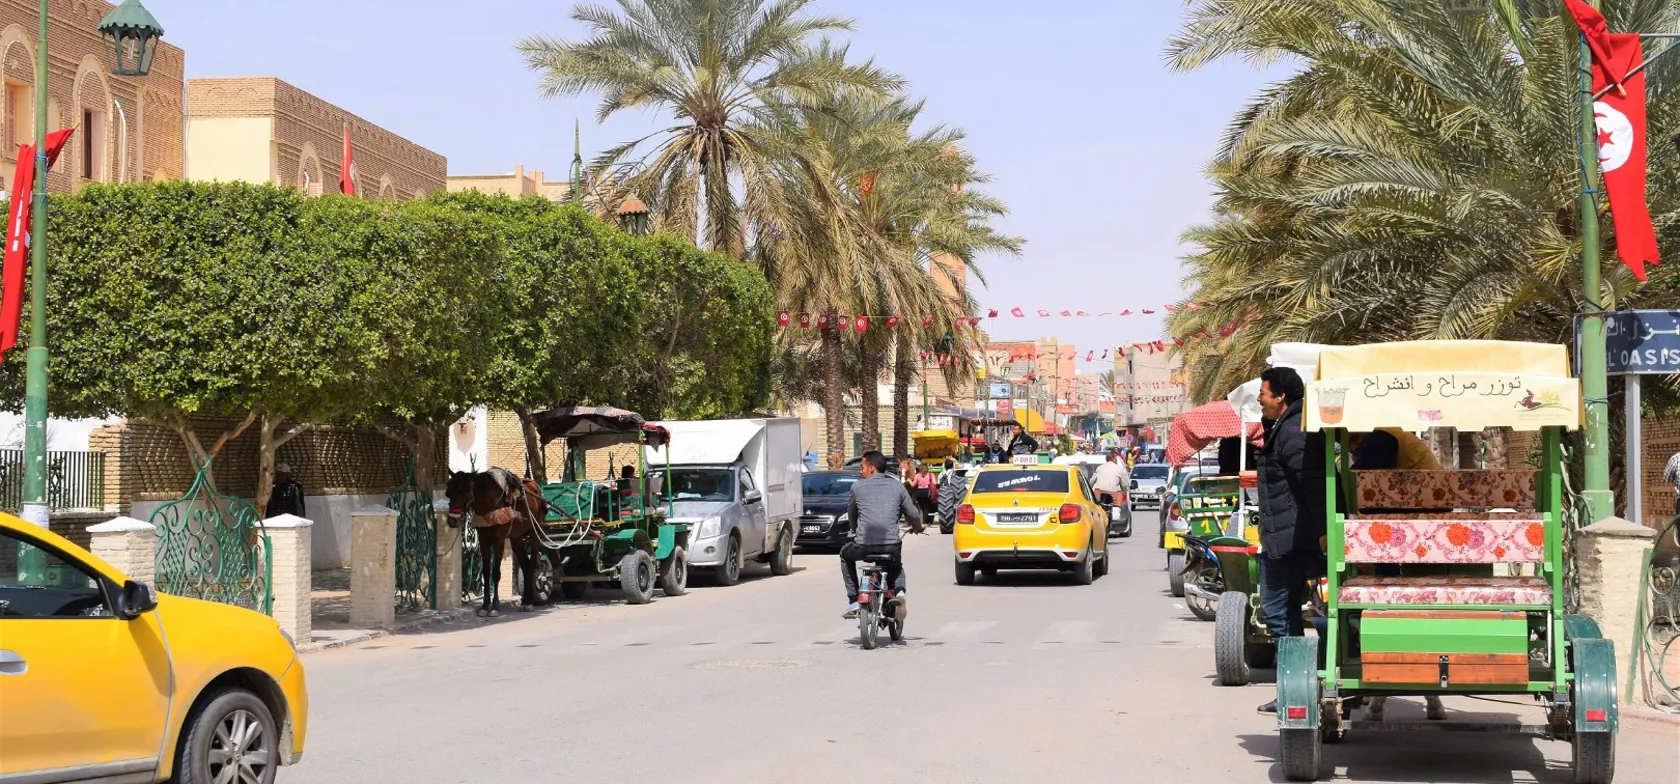 Der er nok indtryk at tage ind i de tunesiske gader. Foto Anne Sophie Meyer Larsen